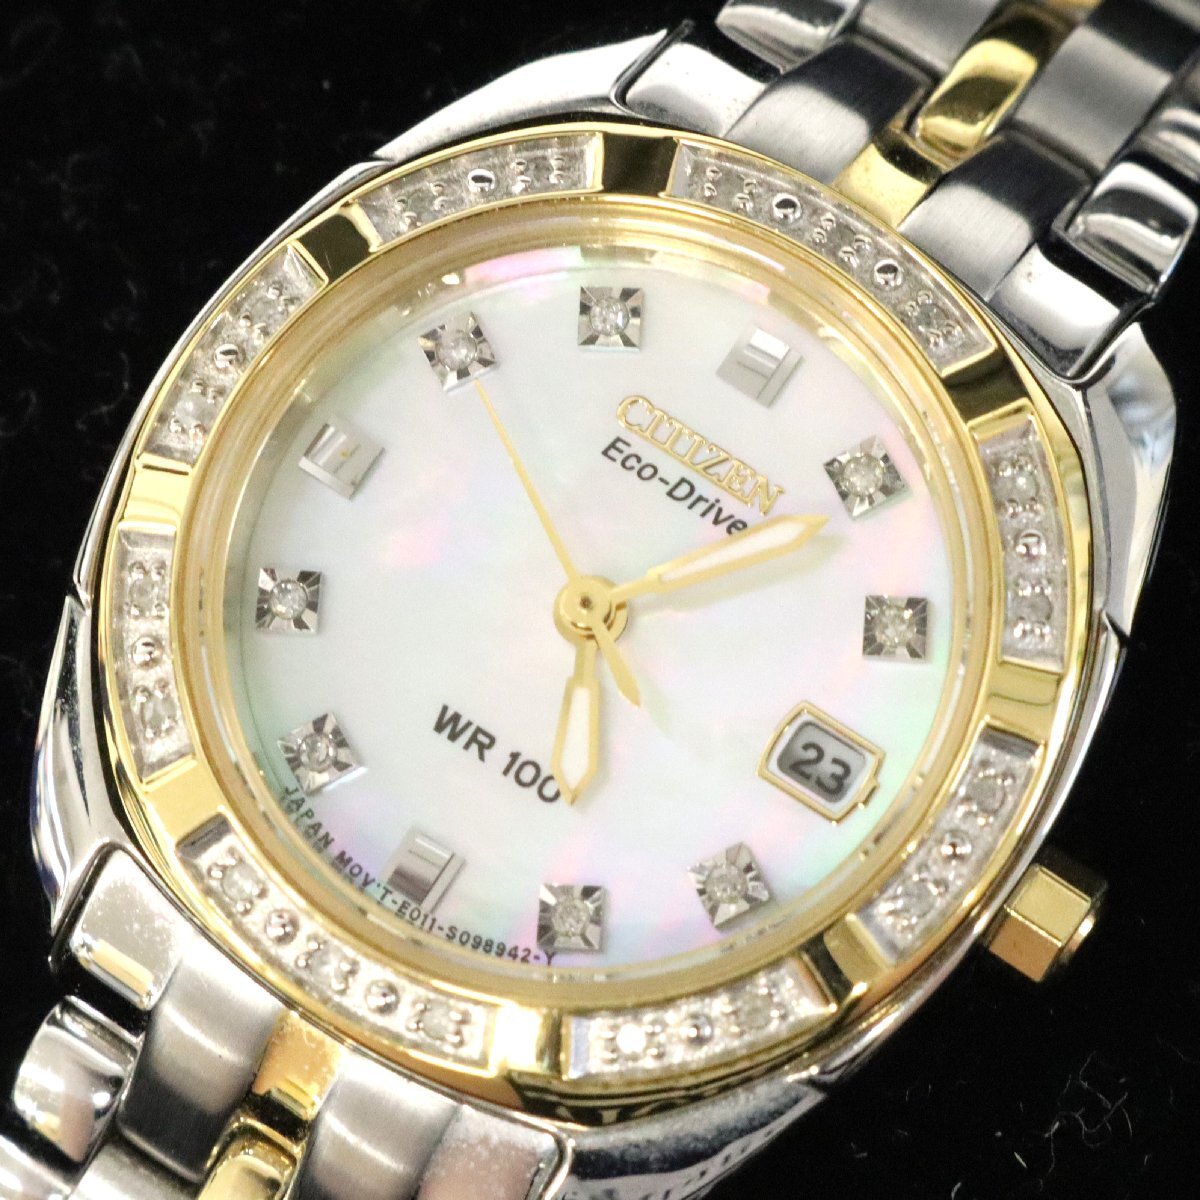  Junk часы * Citizen, Seiko женский мужские наручные часы * работоспособность не проверялась *.. из .[B-A49711]